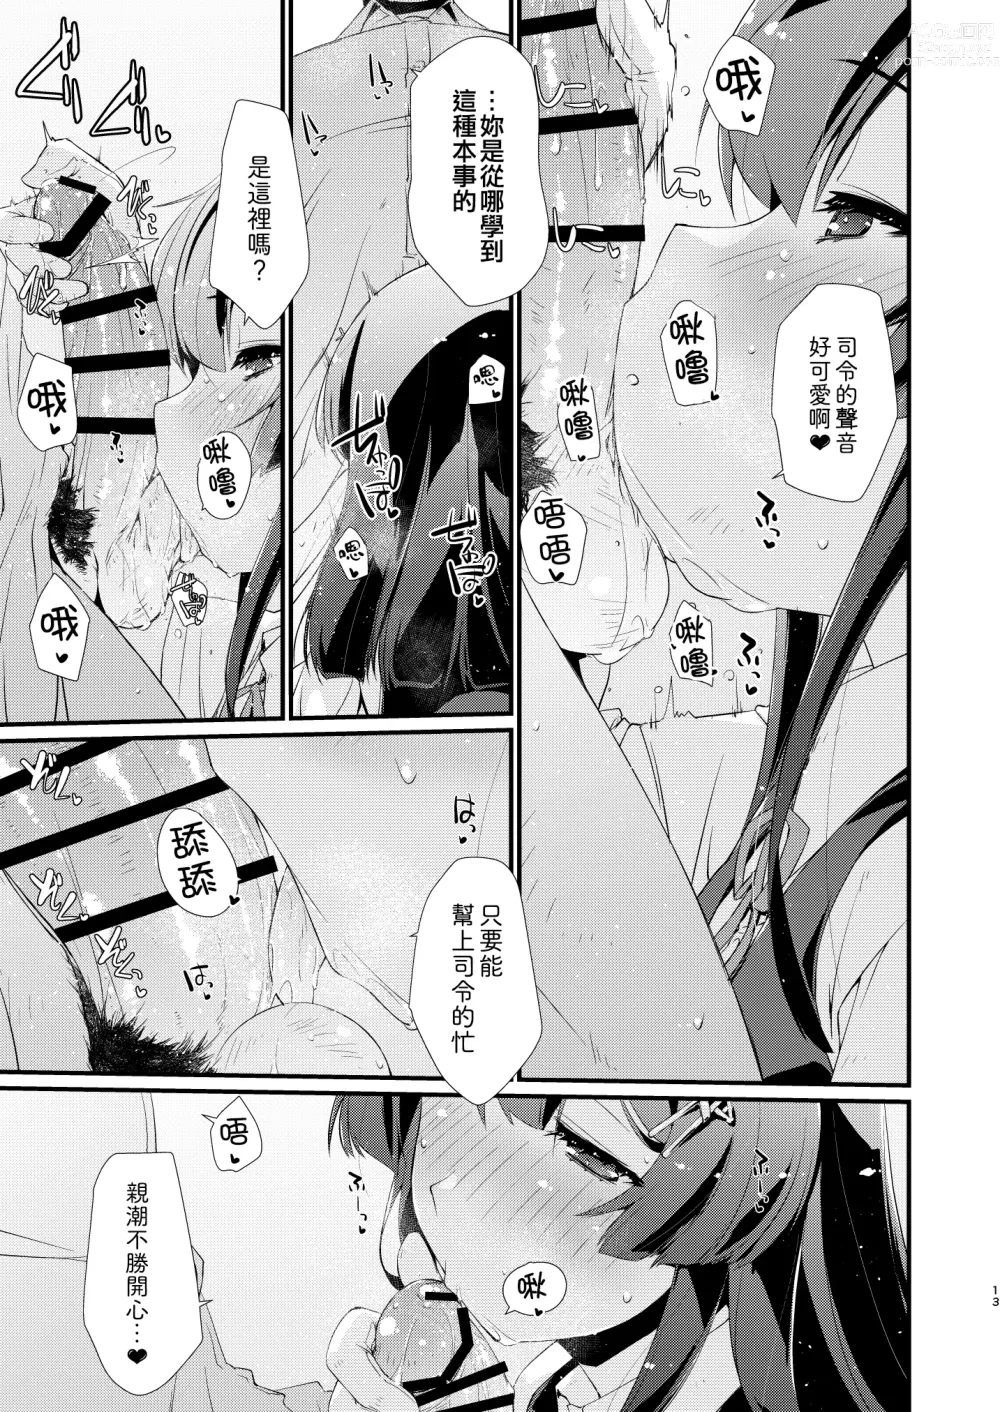 Page 13 of doujinshi Oyashio-chan no Koki Tebukuro.